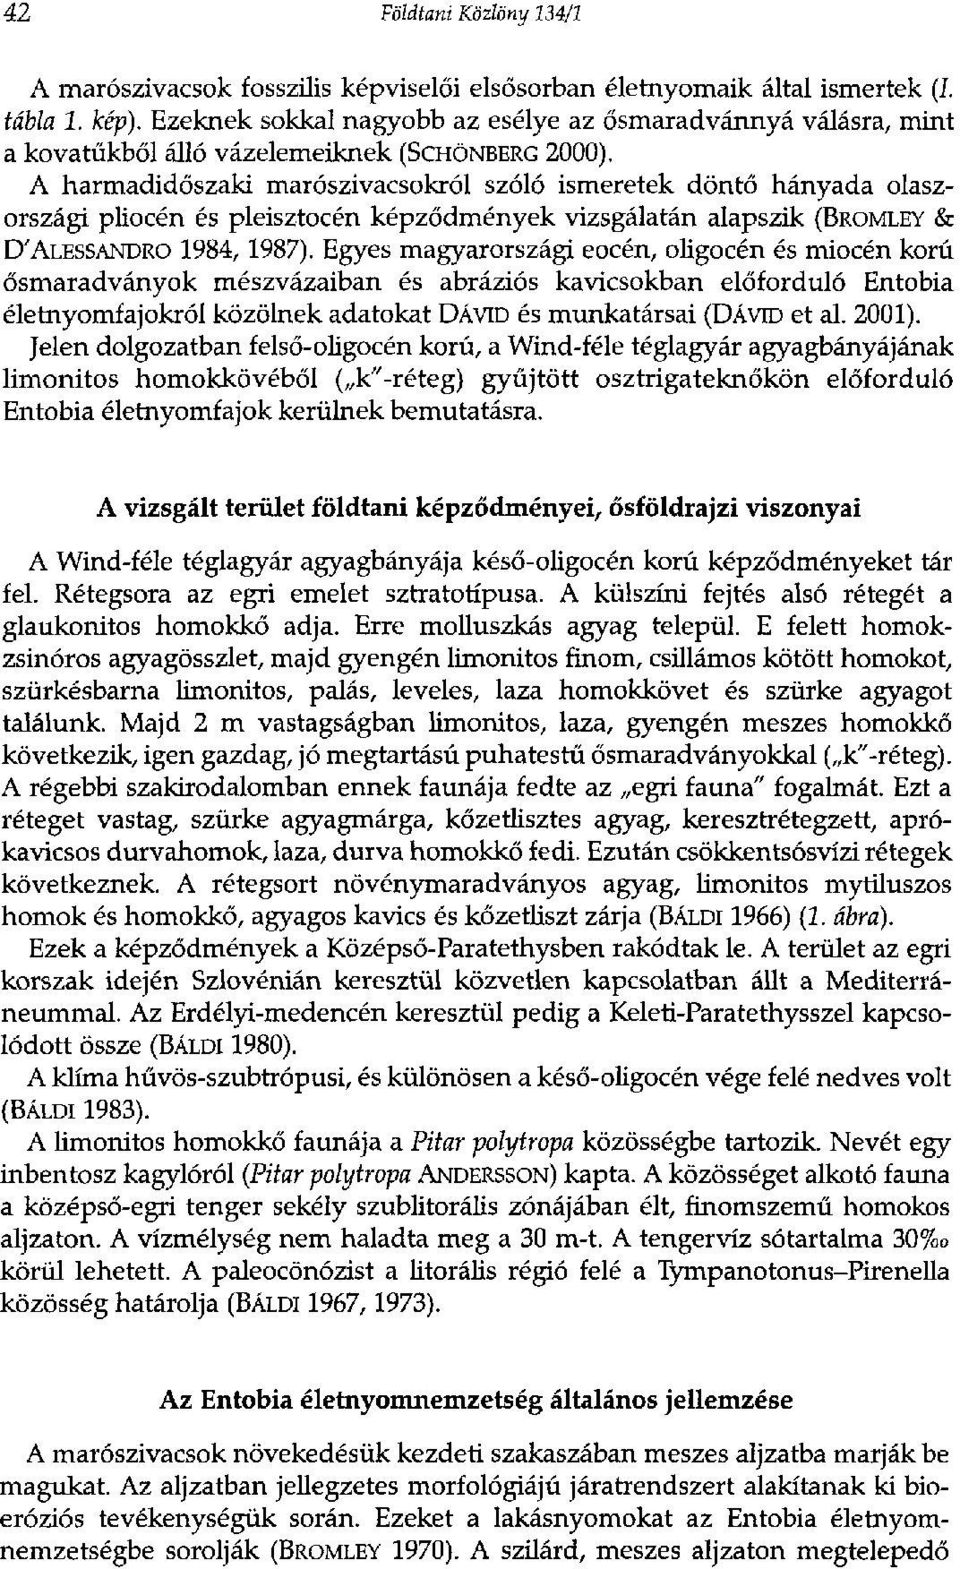 A harmadidőszaki marószivacsokról szóló ismeretek döntő hányada olaszországi pliocén és pleisztocén képződmények vizsgálatán alapszik (BROMLEY & D'ALESSANDRO 1984,1987).